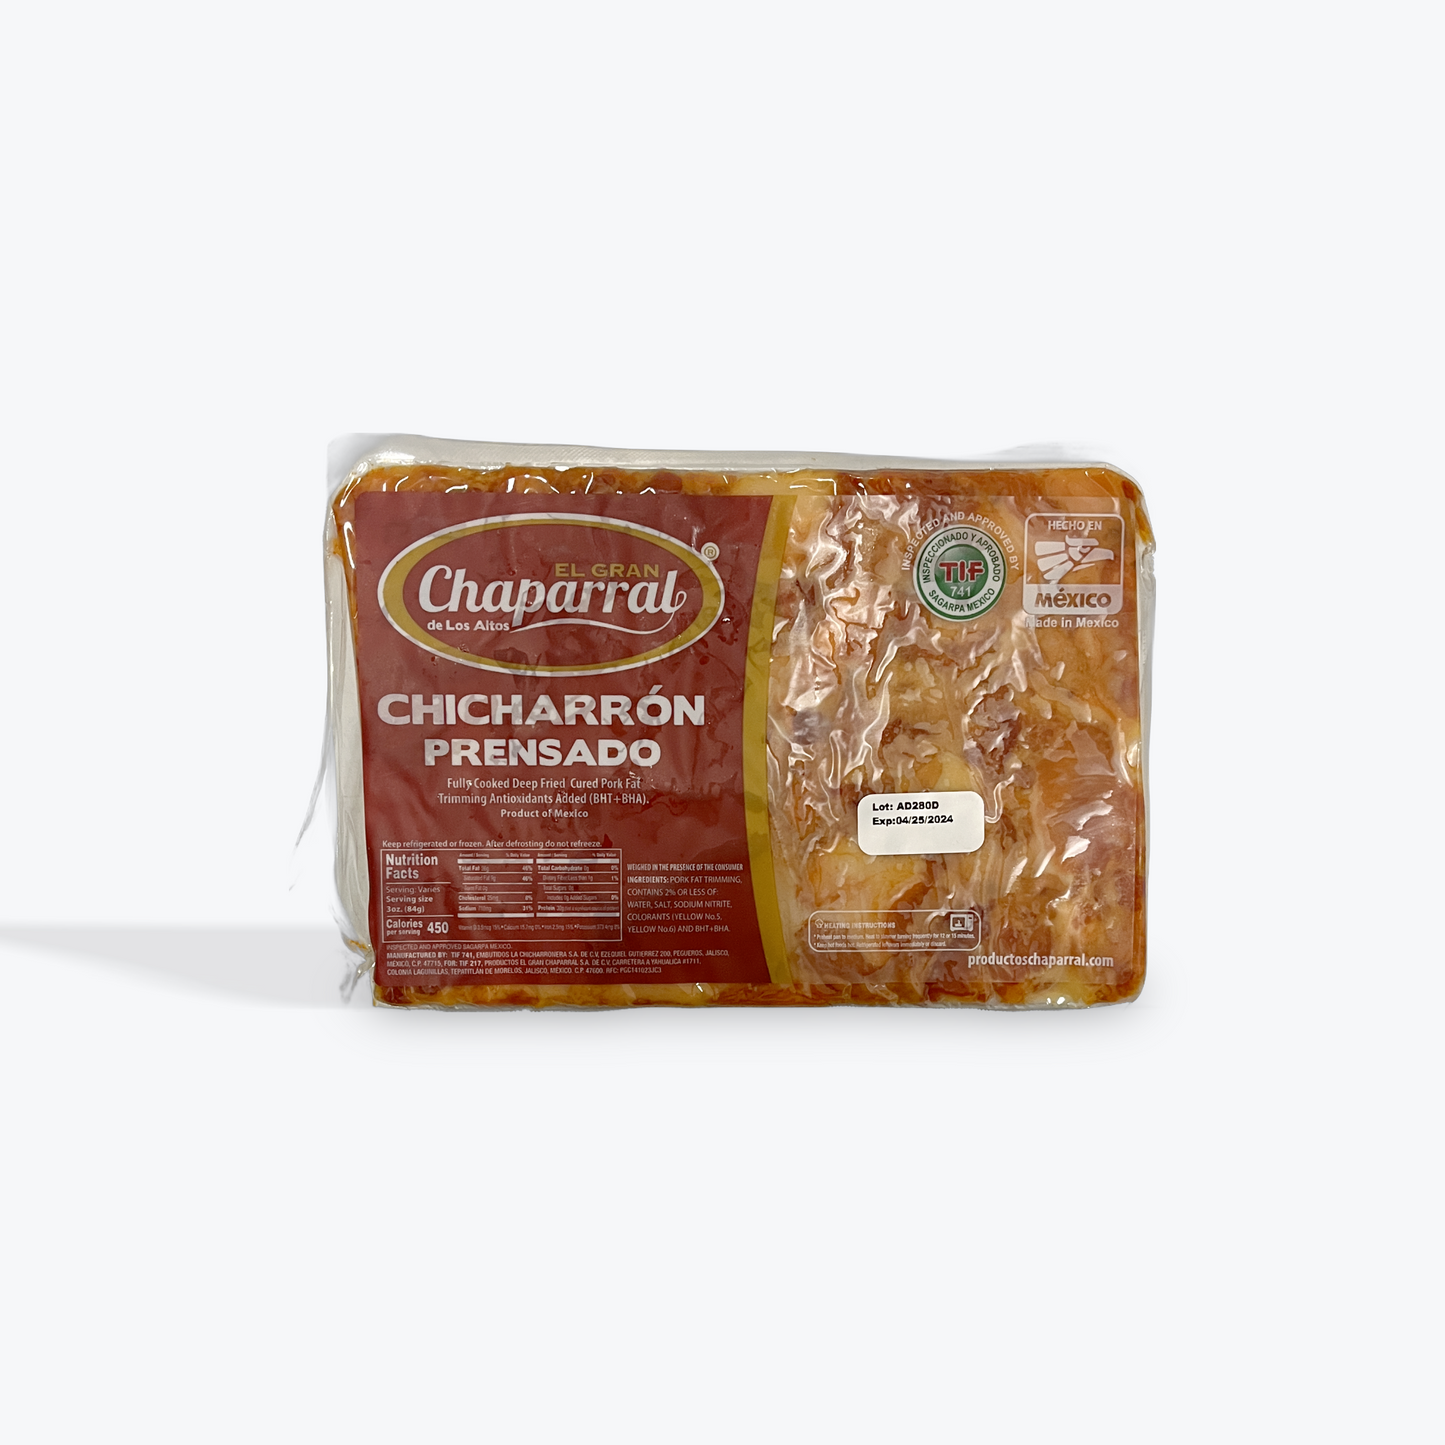 El Gran Chaparral - Chicharron Prensado, 1 lb, Single pack